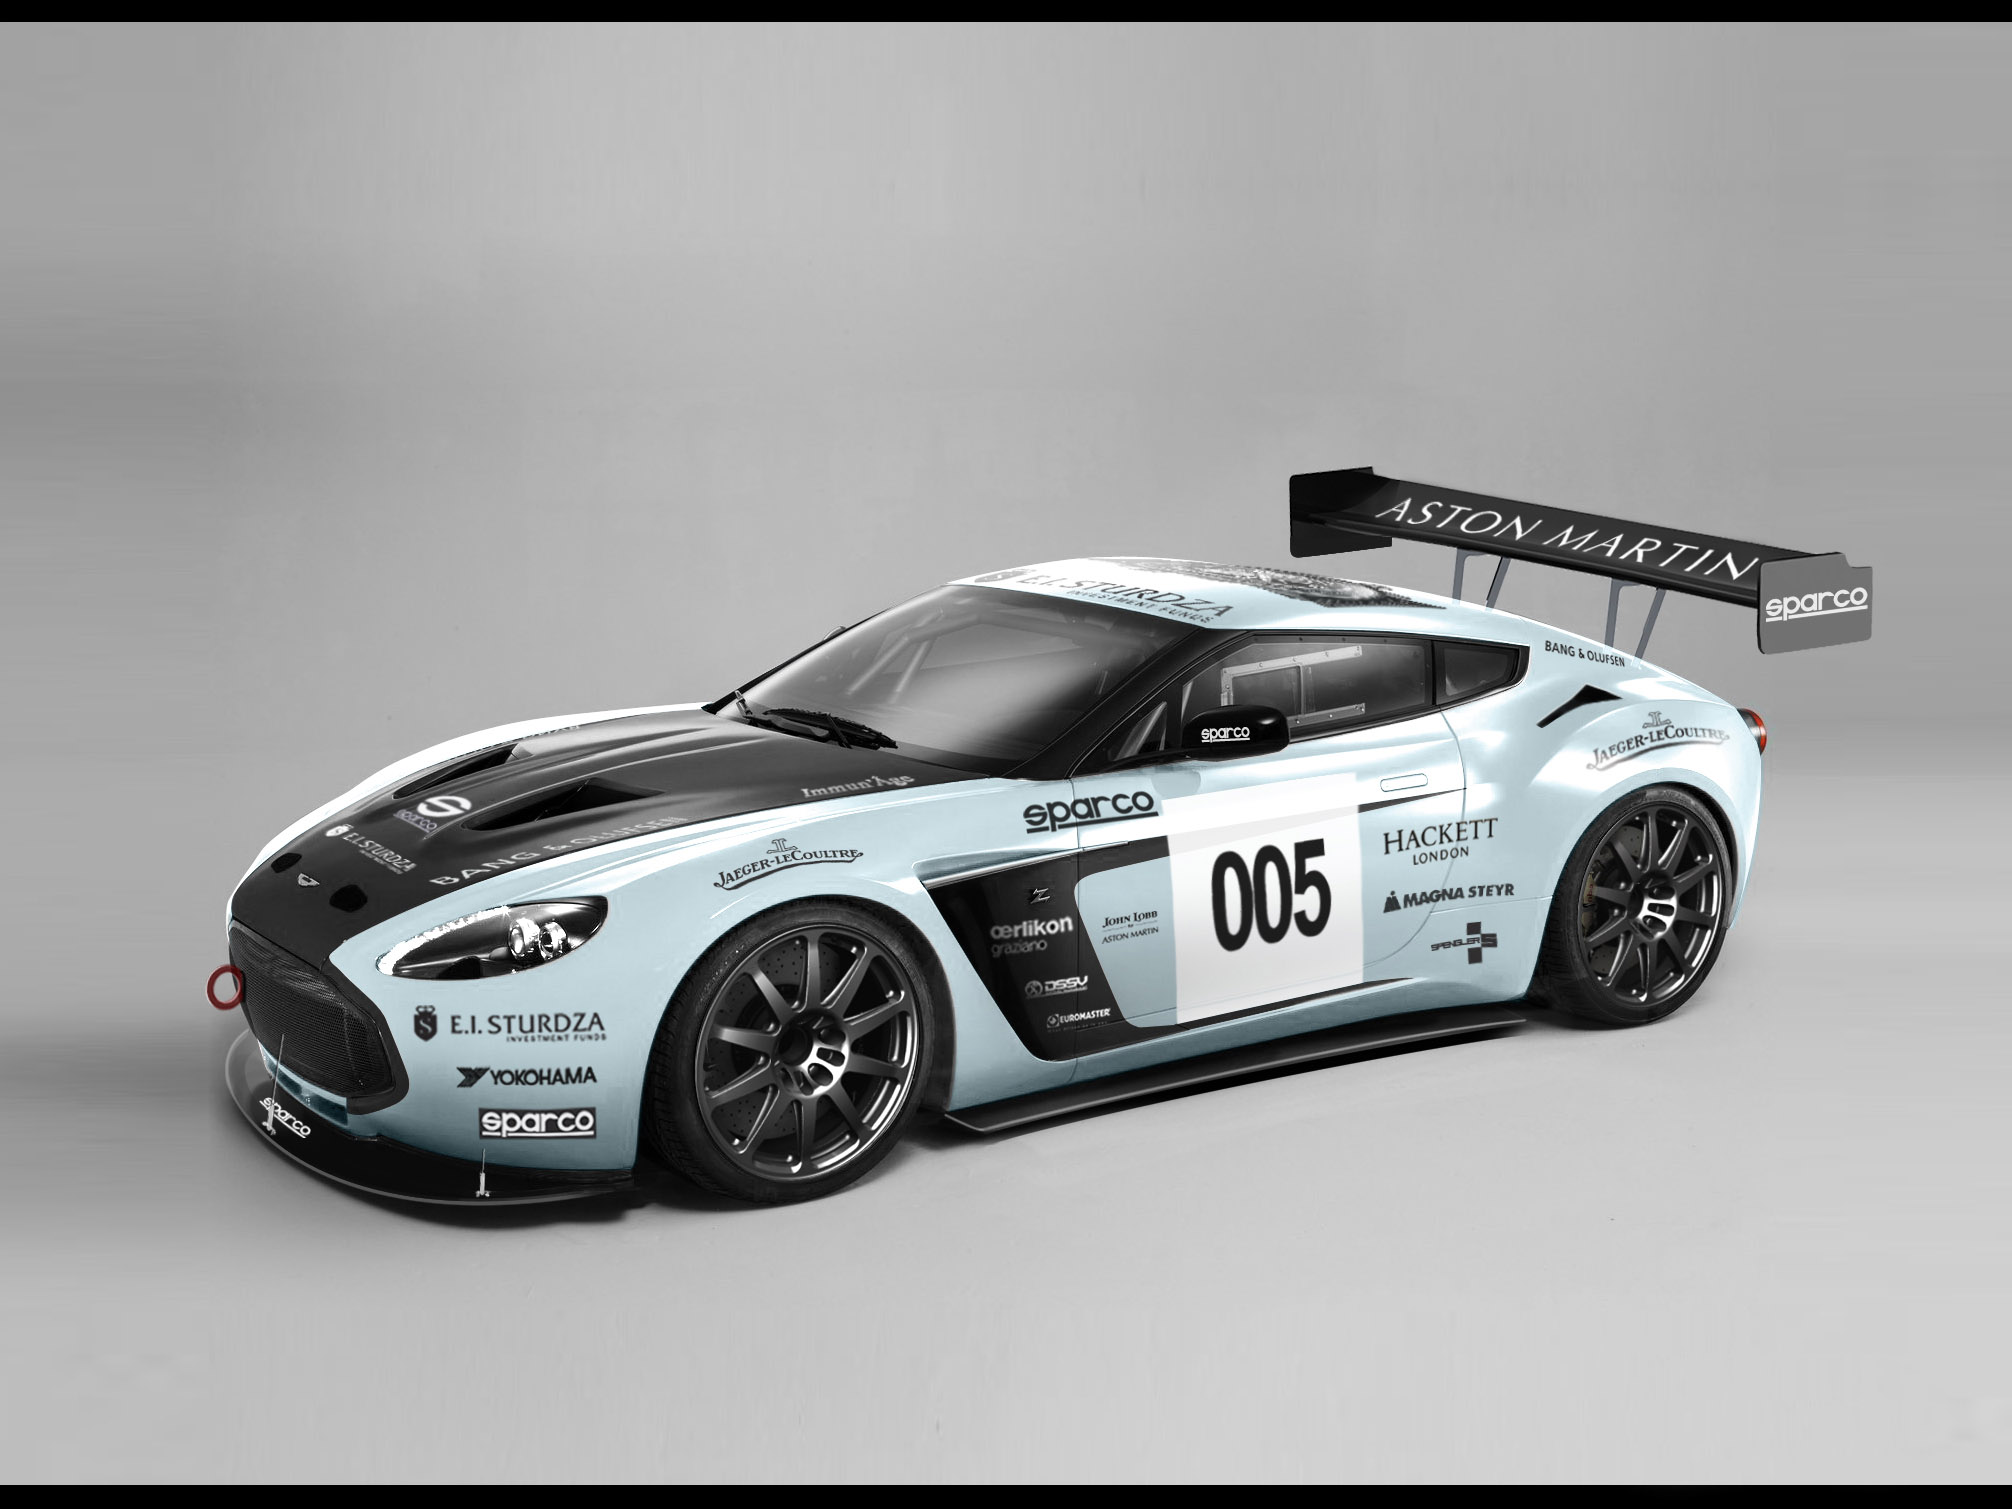 Aston Martin - Nurburgring 24 hour